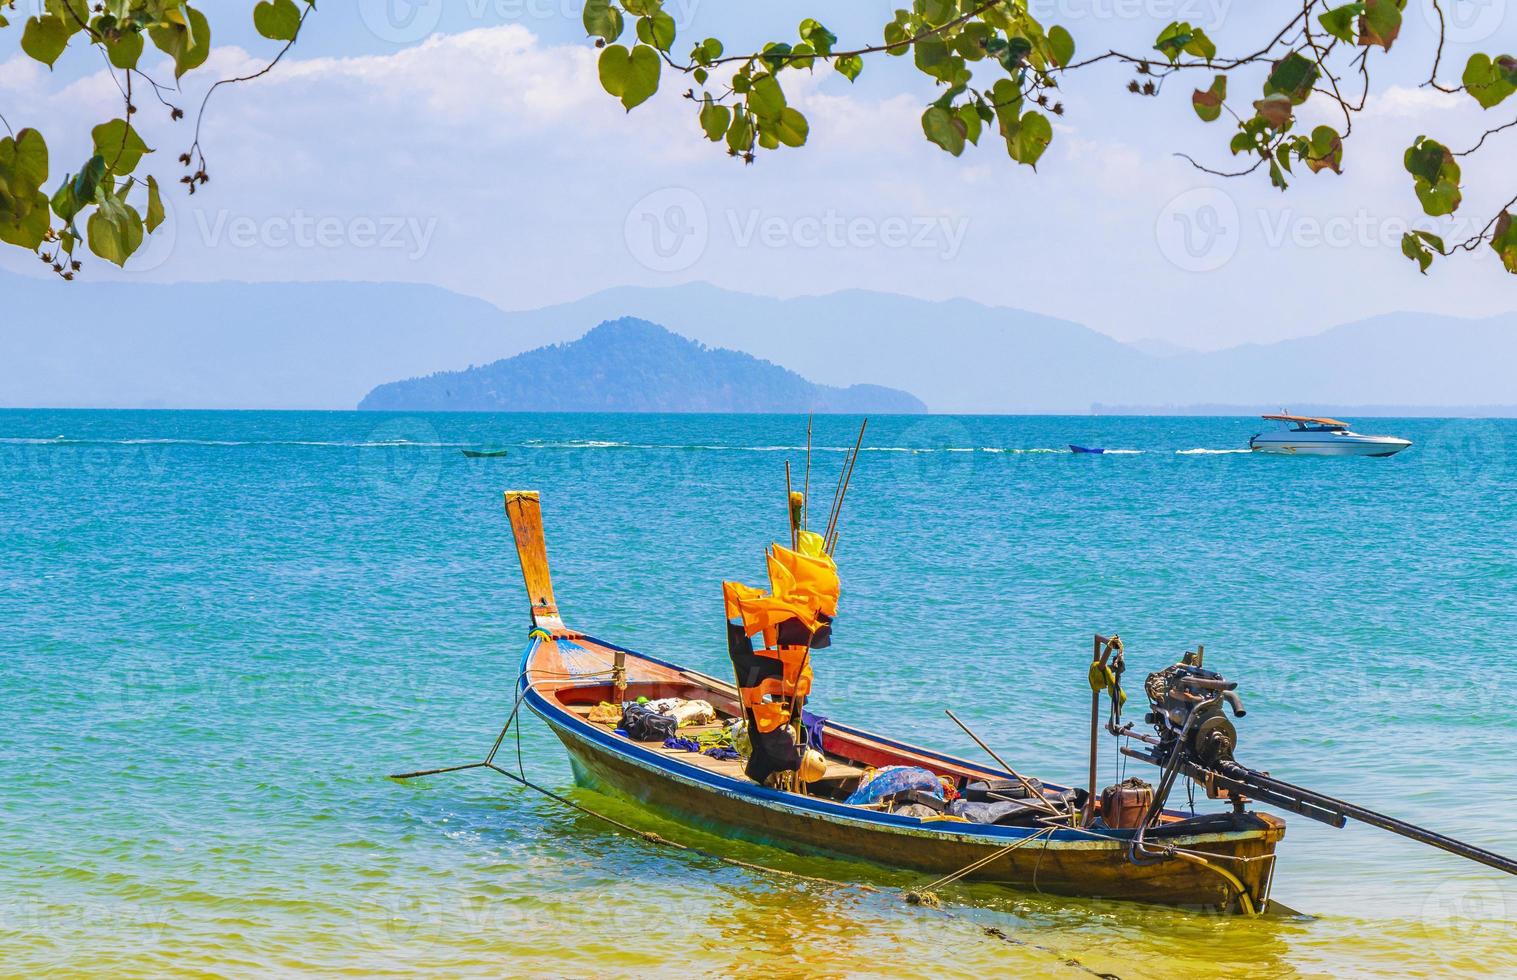 bote de cola larga en el muelle en la isla de Koh Phayam Tailandia. foto